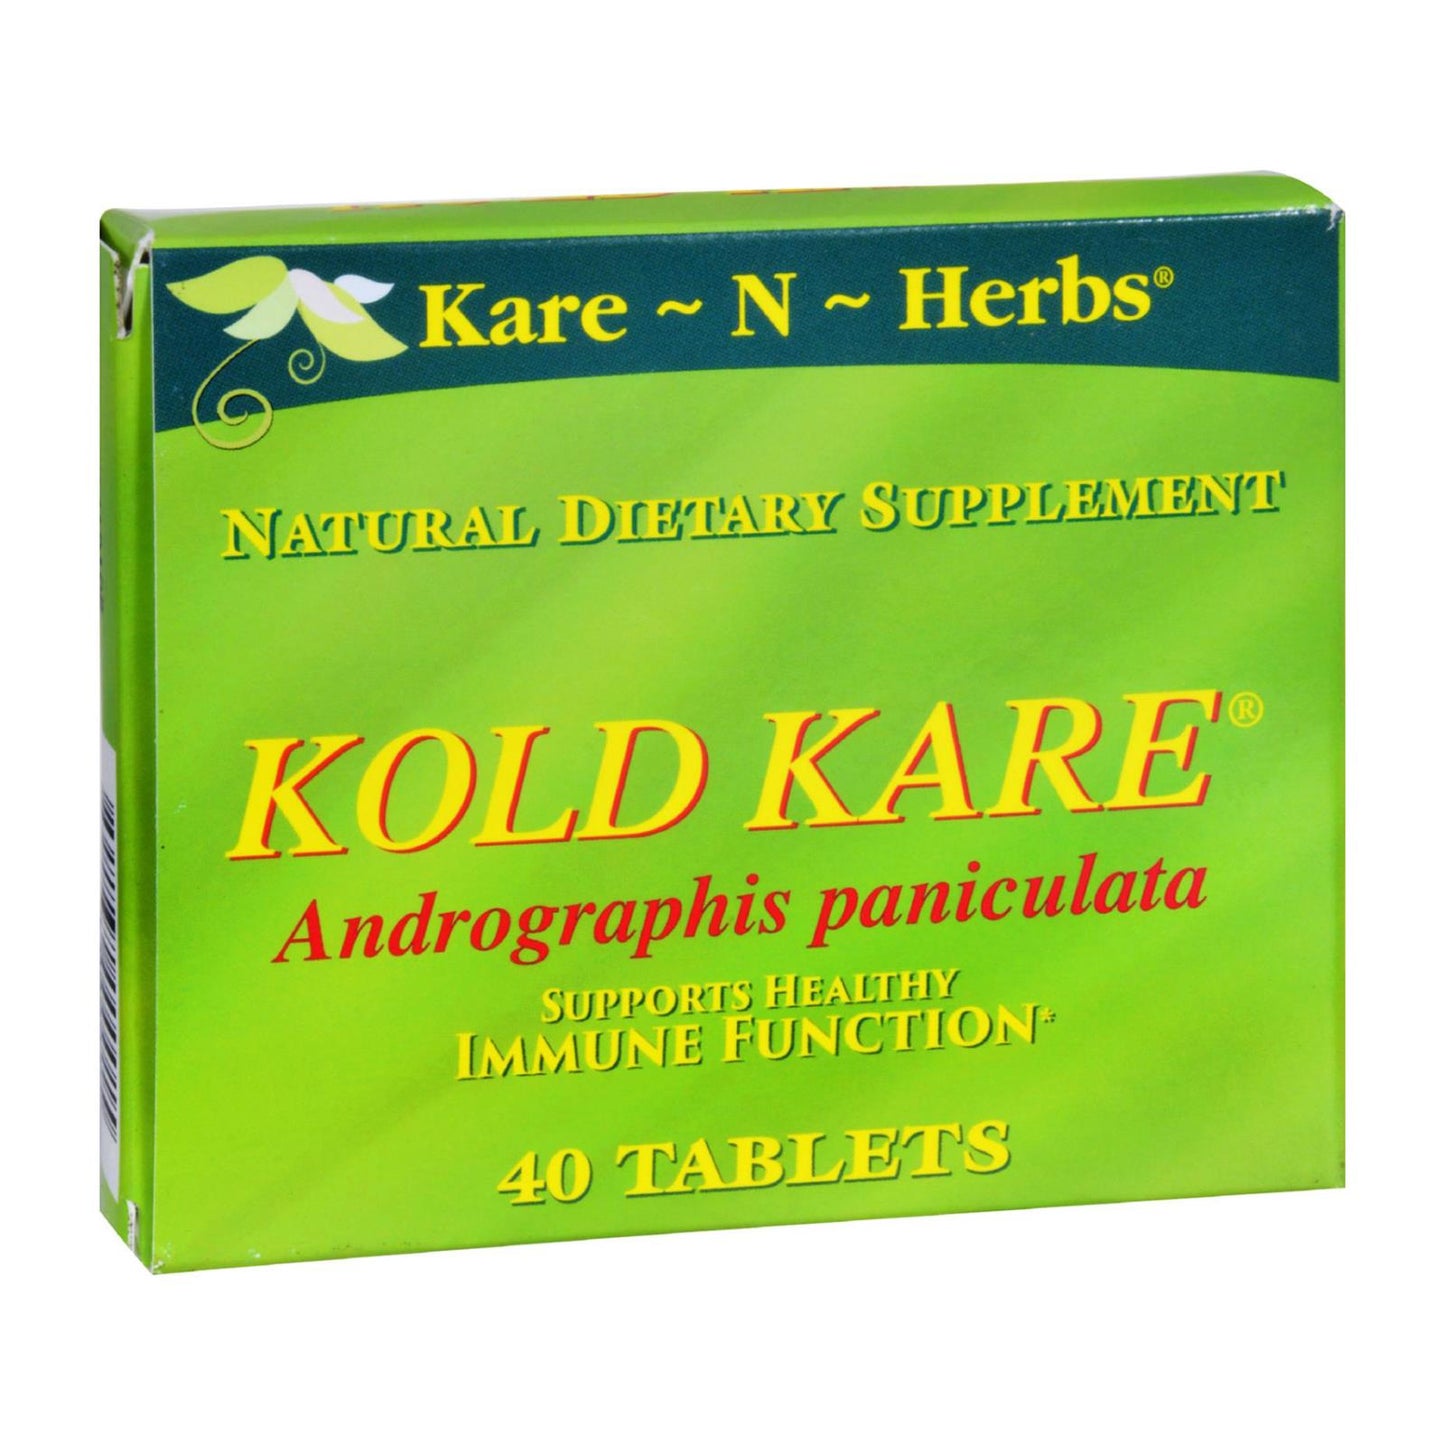 Kare-n-herbs Kold Kare - 40 Tablets